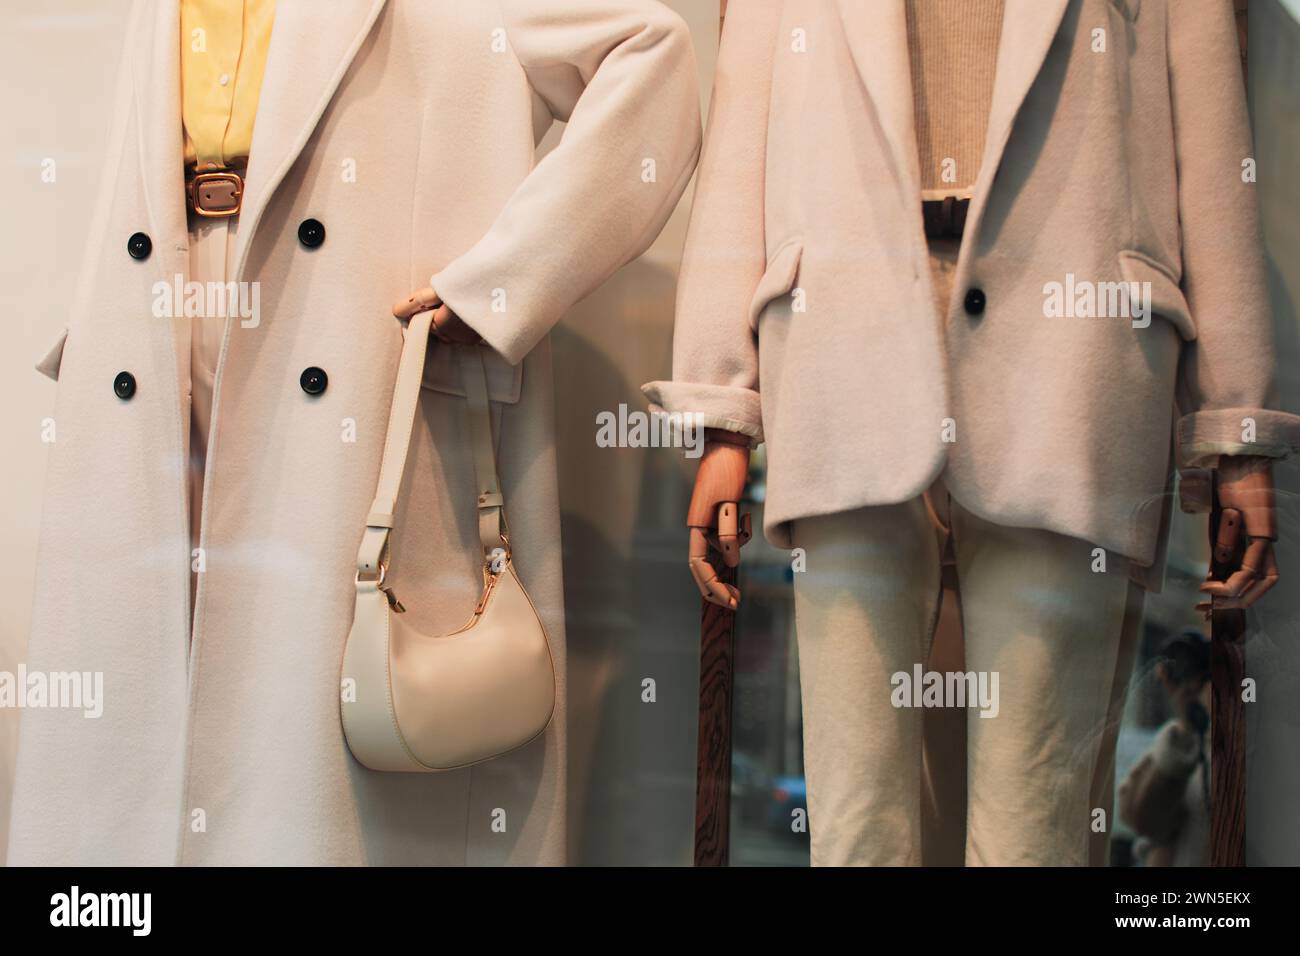 Schicke Schaufensterpuppen in einem Schaufenster, gekleidet mit saisonalem Modetuch. Weißer Mantel, Jacke und Handtasche Stockfoto